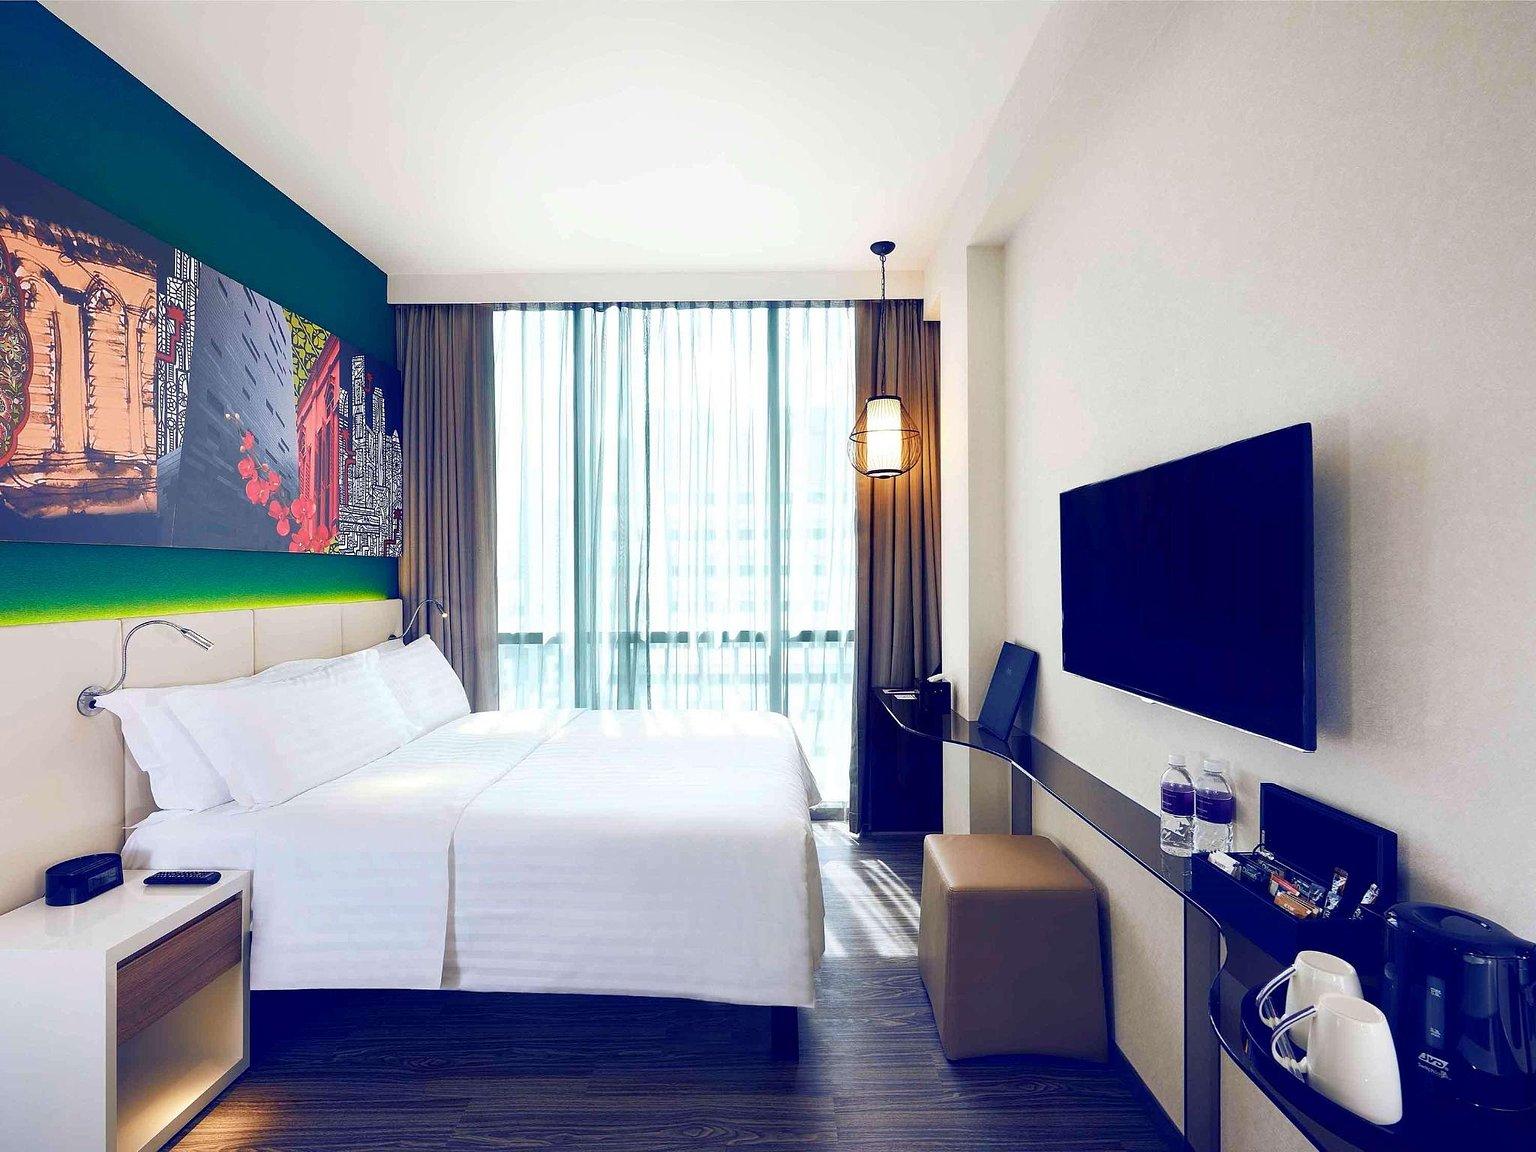 Signature Room - 新加坡武吉士美居酒店 / Mercure Singapore Bugis